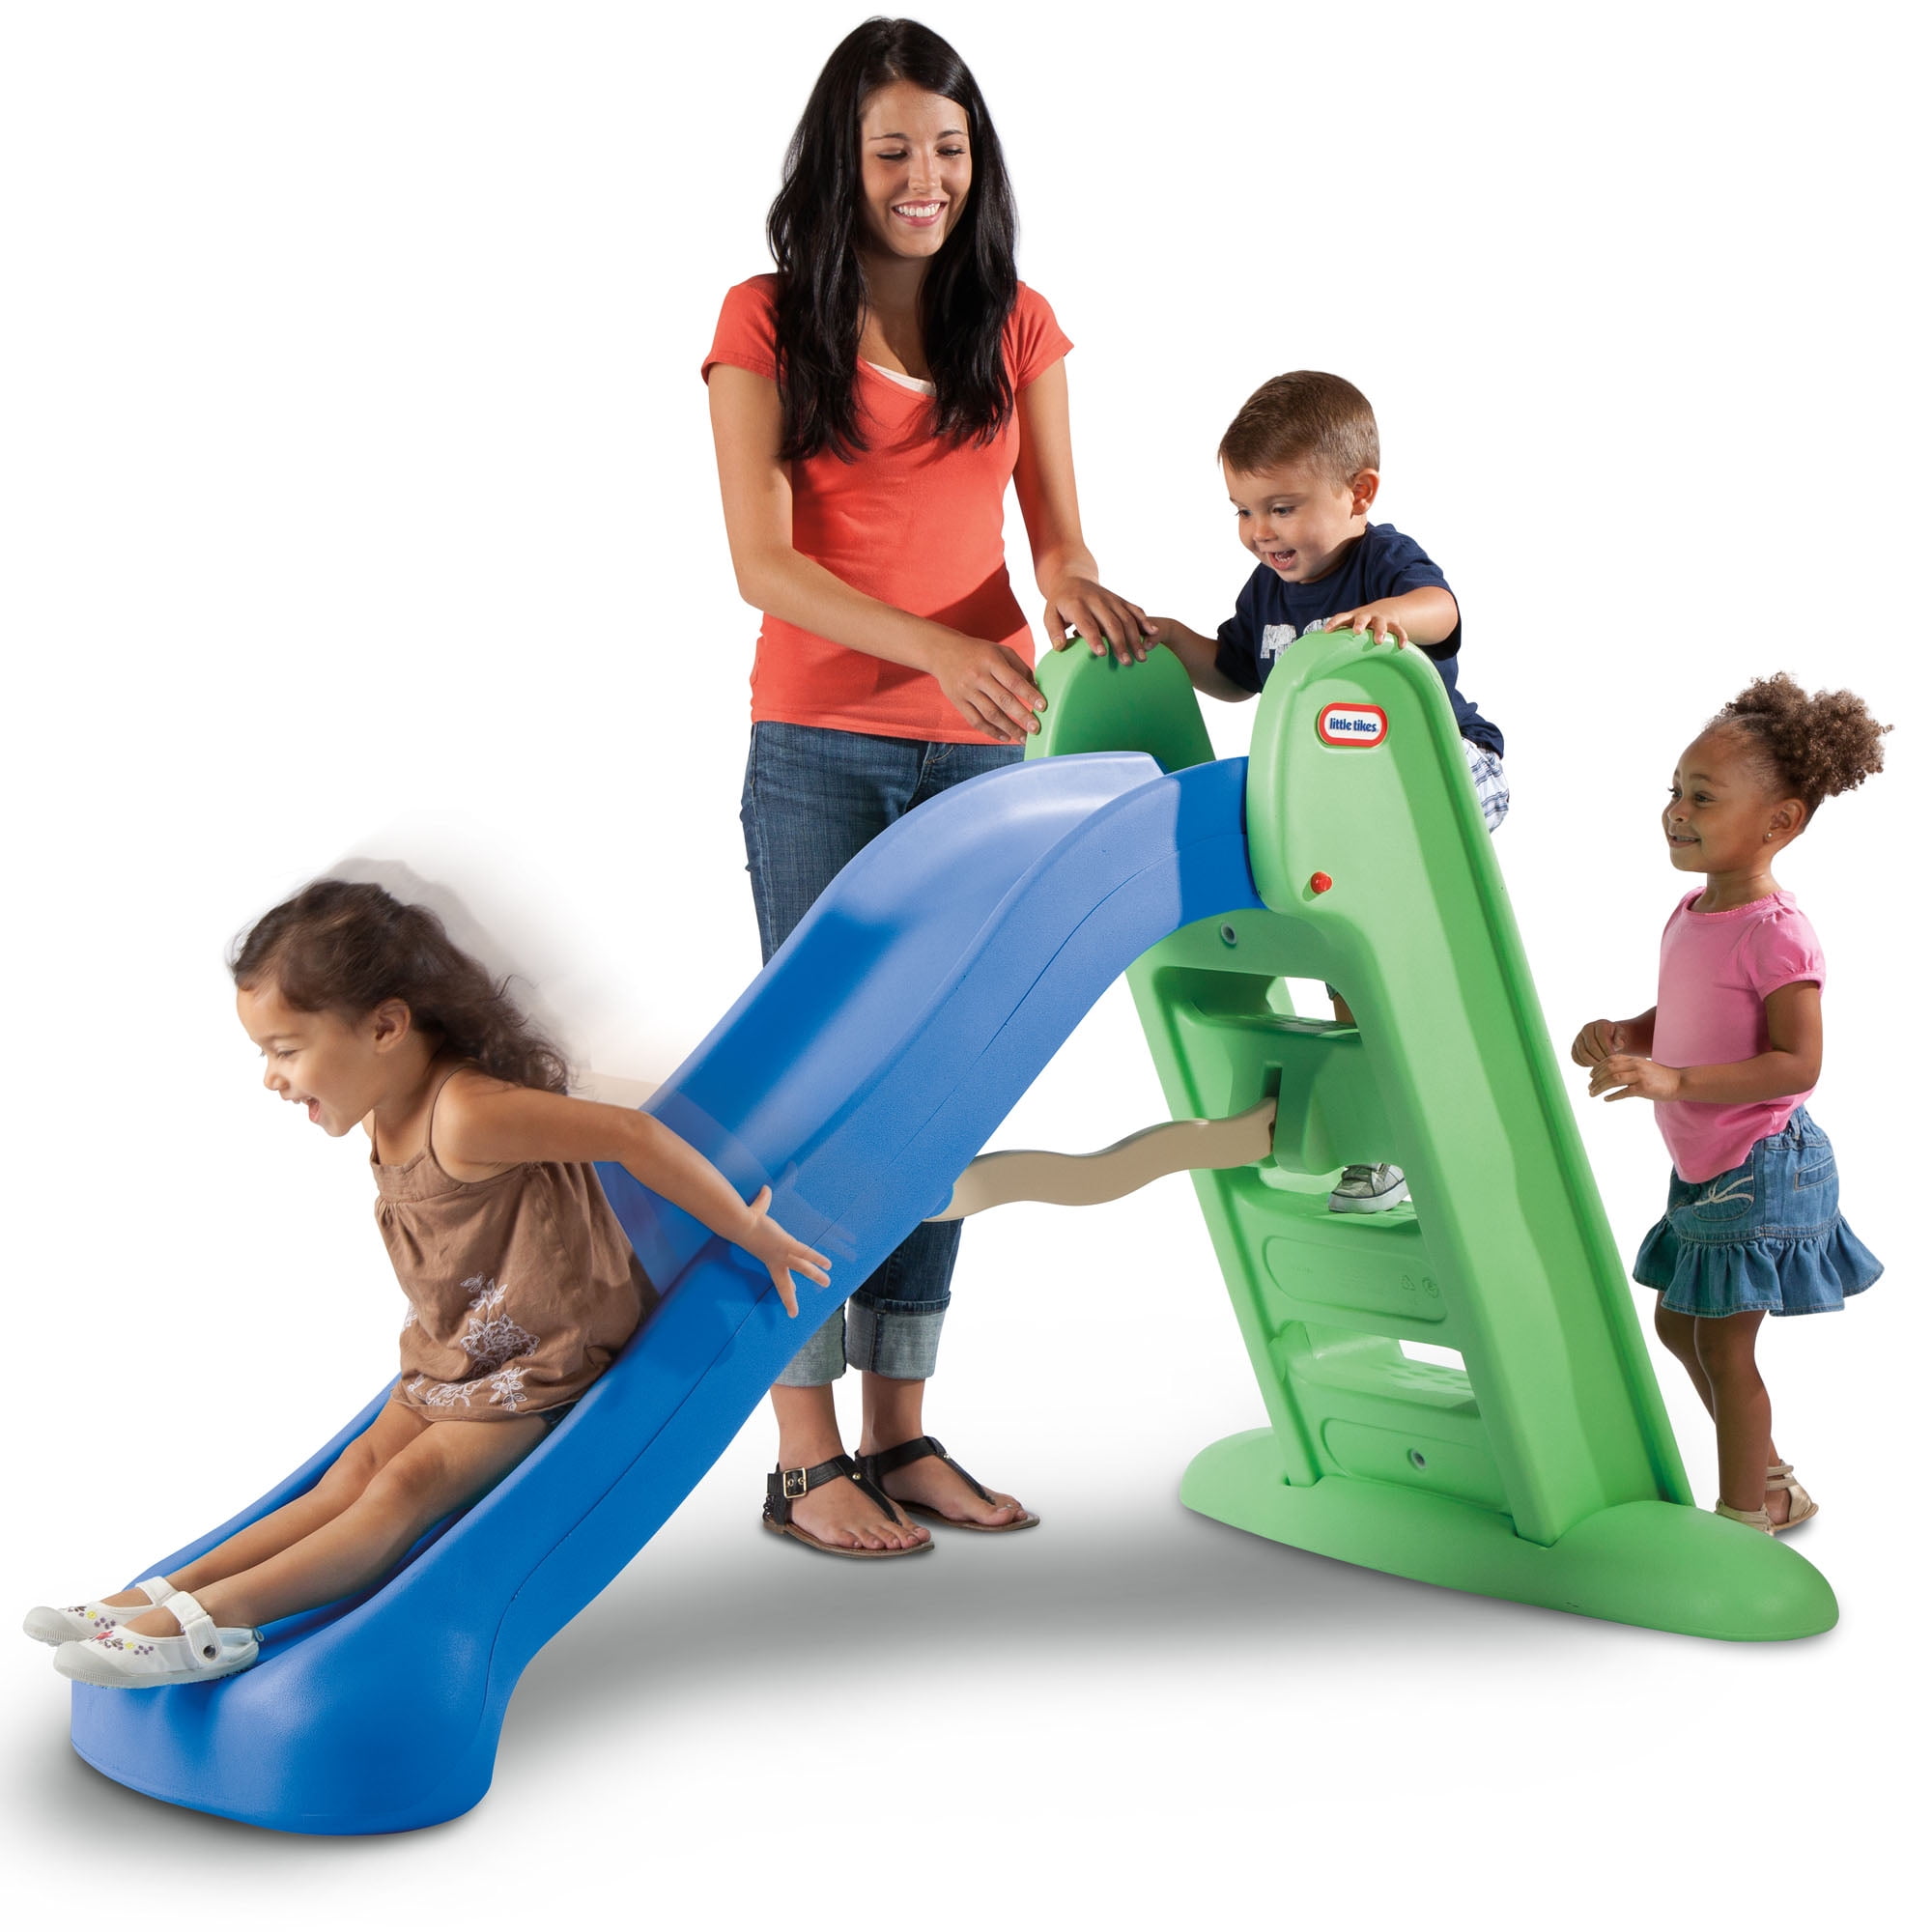 Children Folding Slide Plastic Fun Toy Up-down For Kids Indoor Outdoor Active 